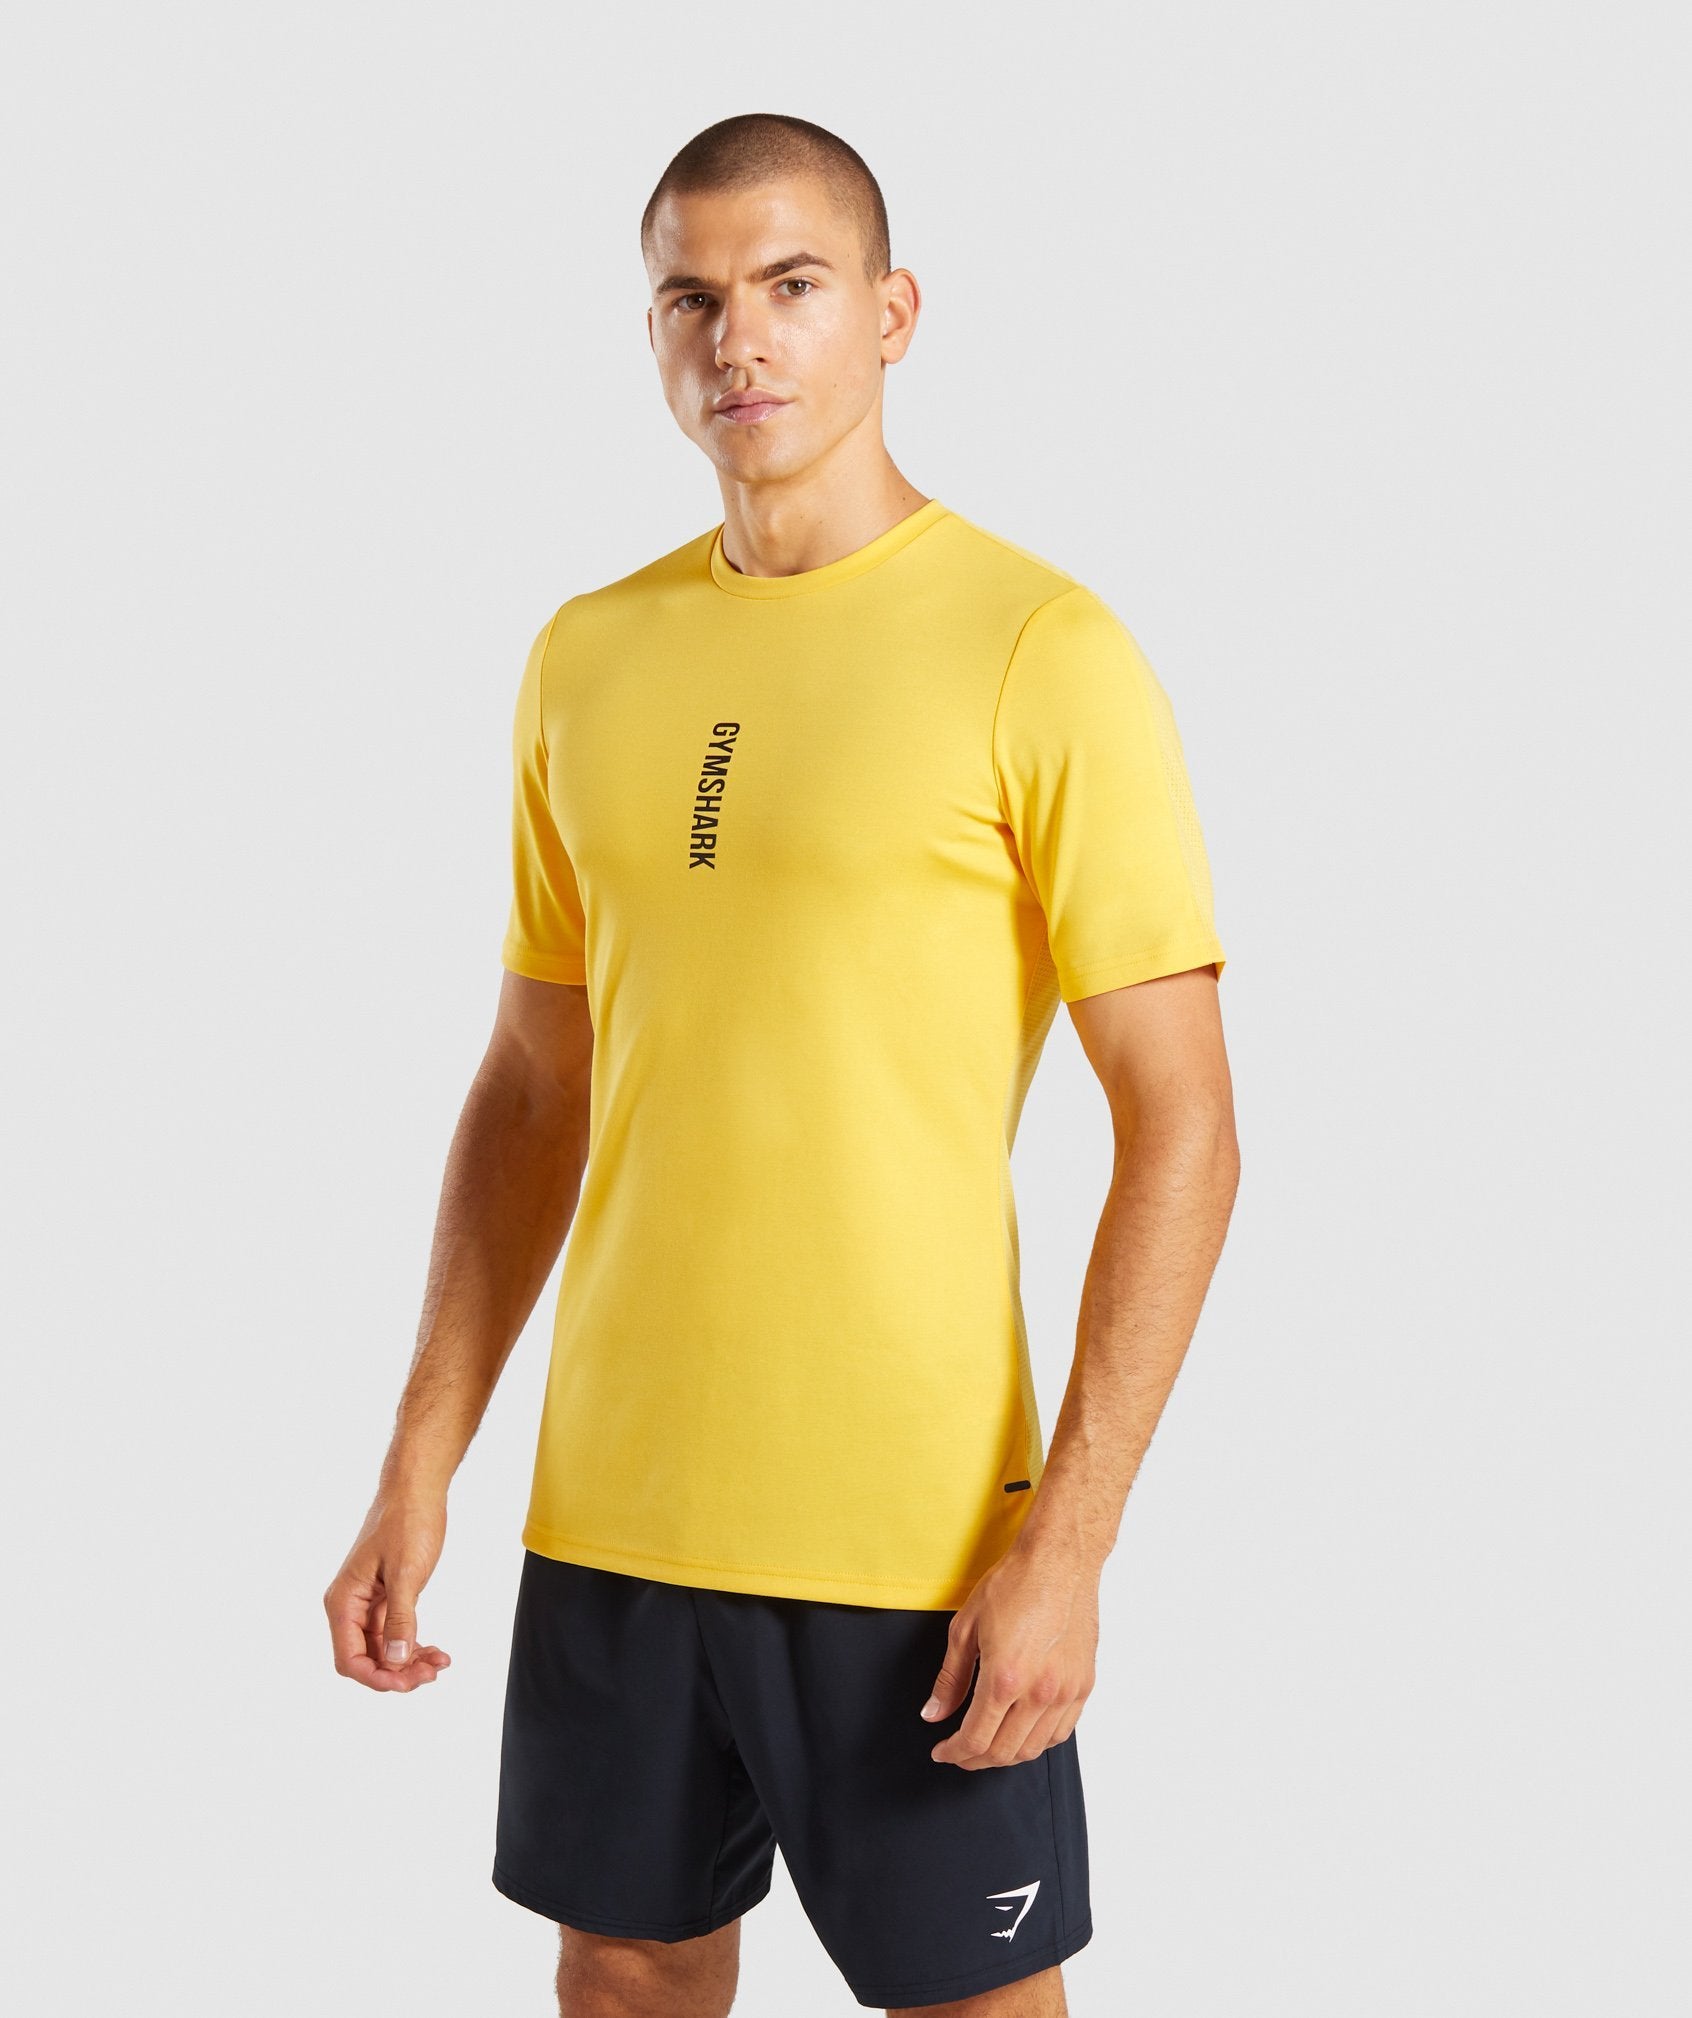 Raid T-Shirt in Yellow - view 1